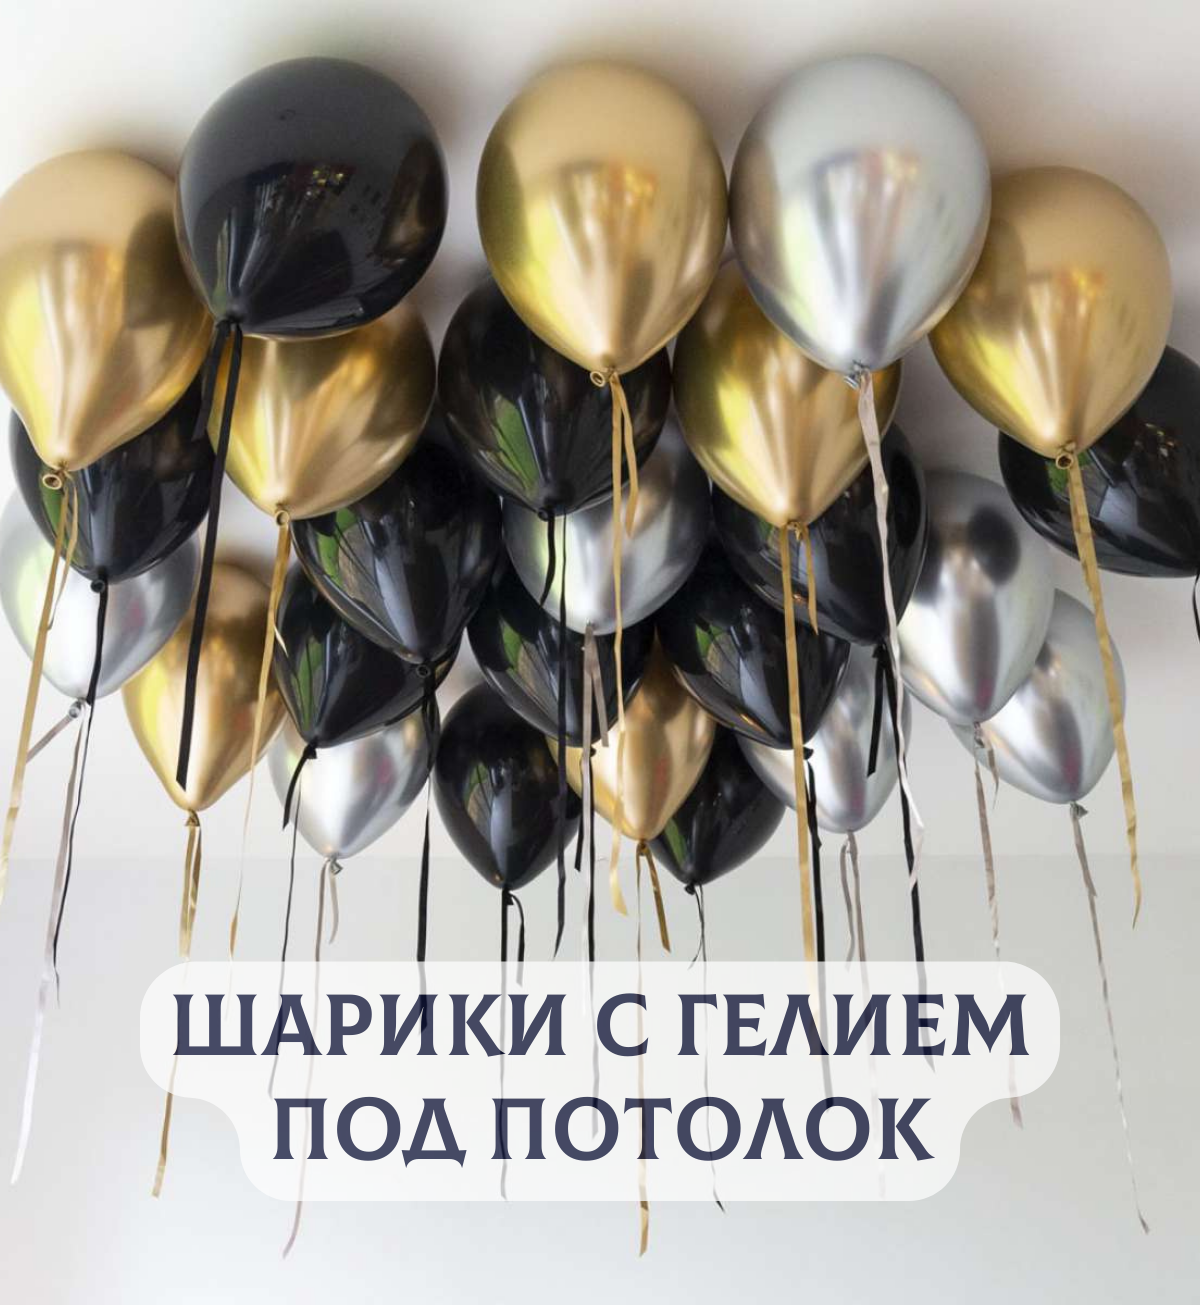 Воздушные шары с гелием под потолок "Черные с серебром и золотом" 15 шт.